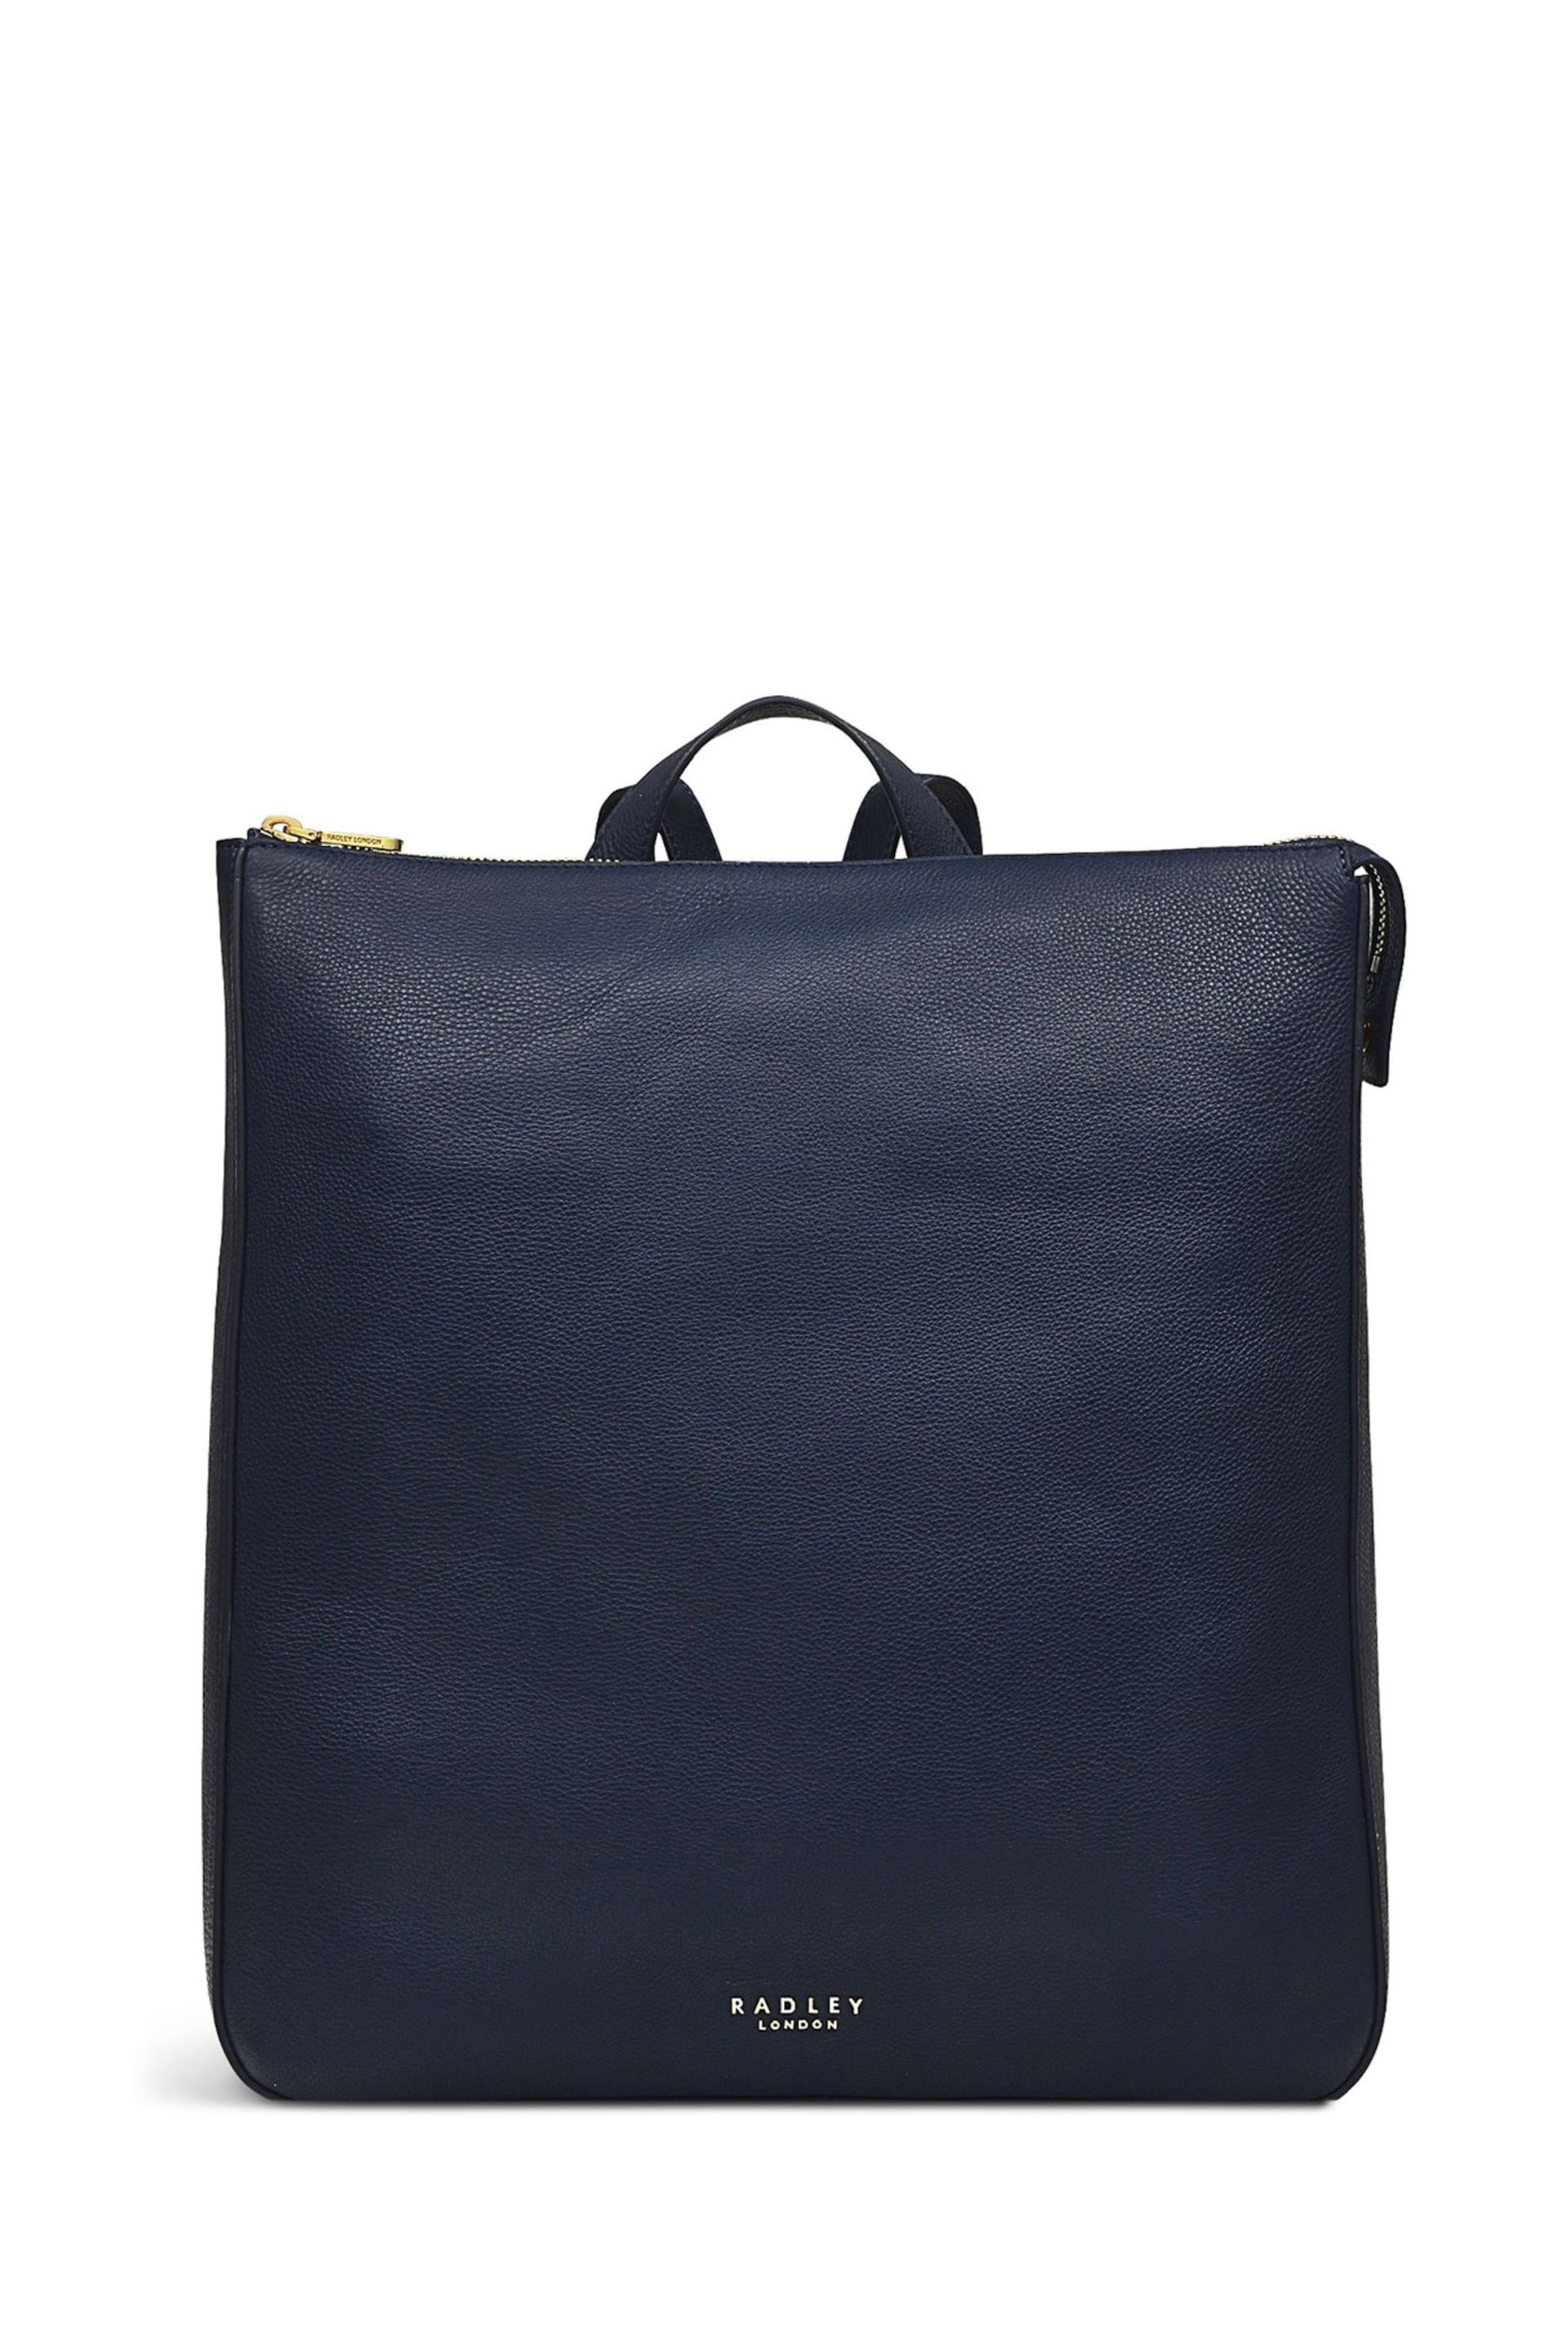 Radley London Blue Westwell Lane Medium Zip-Top Backpack - Image 2 of 5